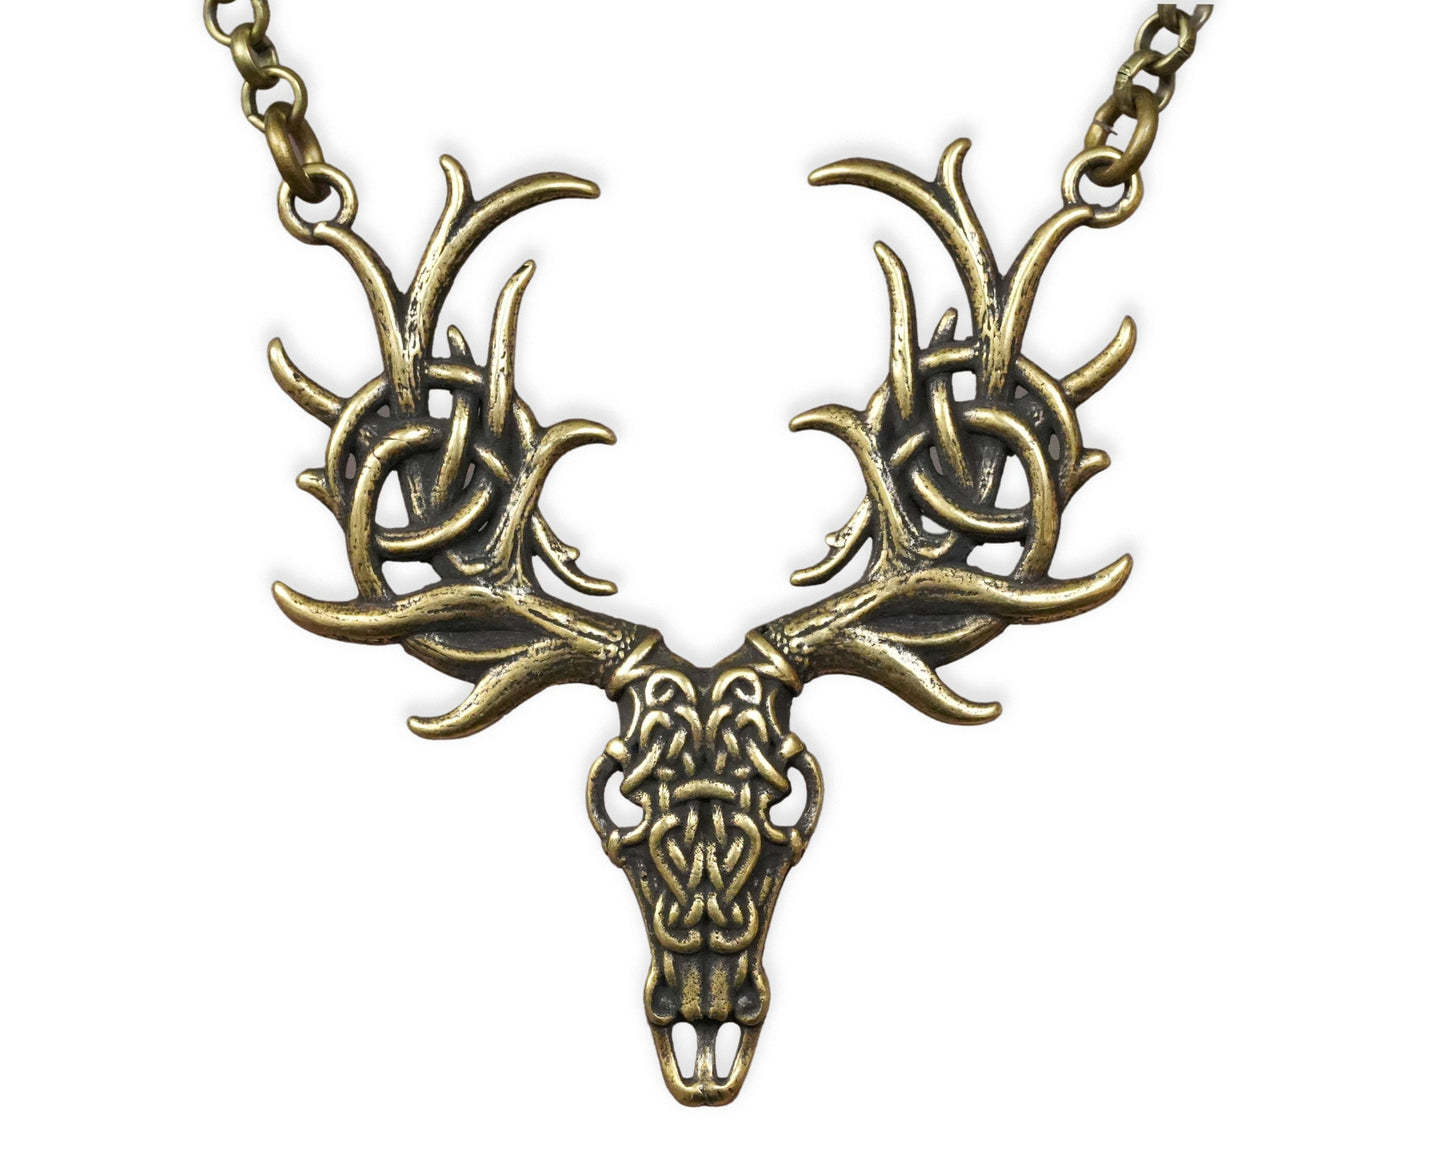 Keltischer Cernunnos-Hirschgeweih-Halskettenanhänger mit keltischem Knotenmuster, Symbol der Wiedergeburt